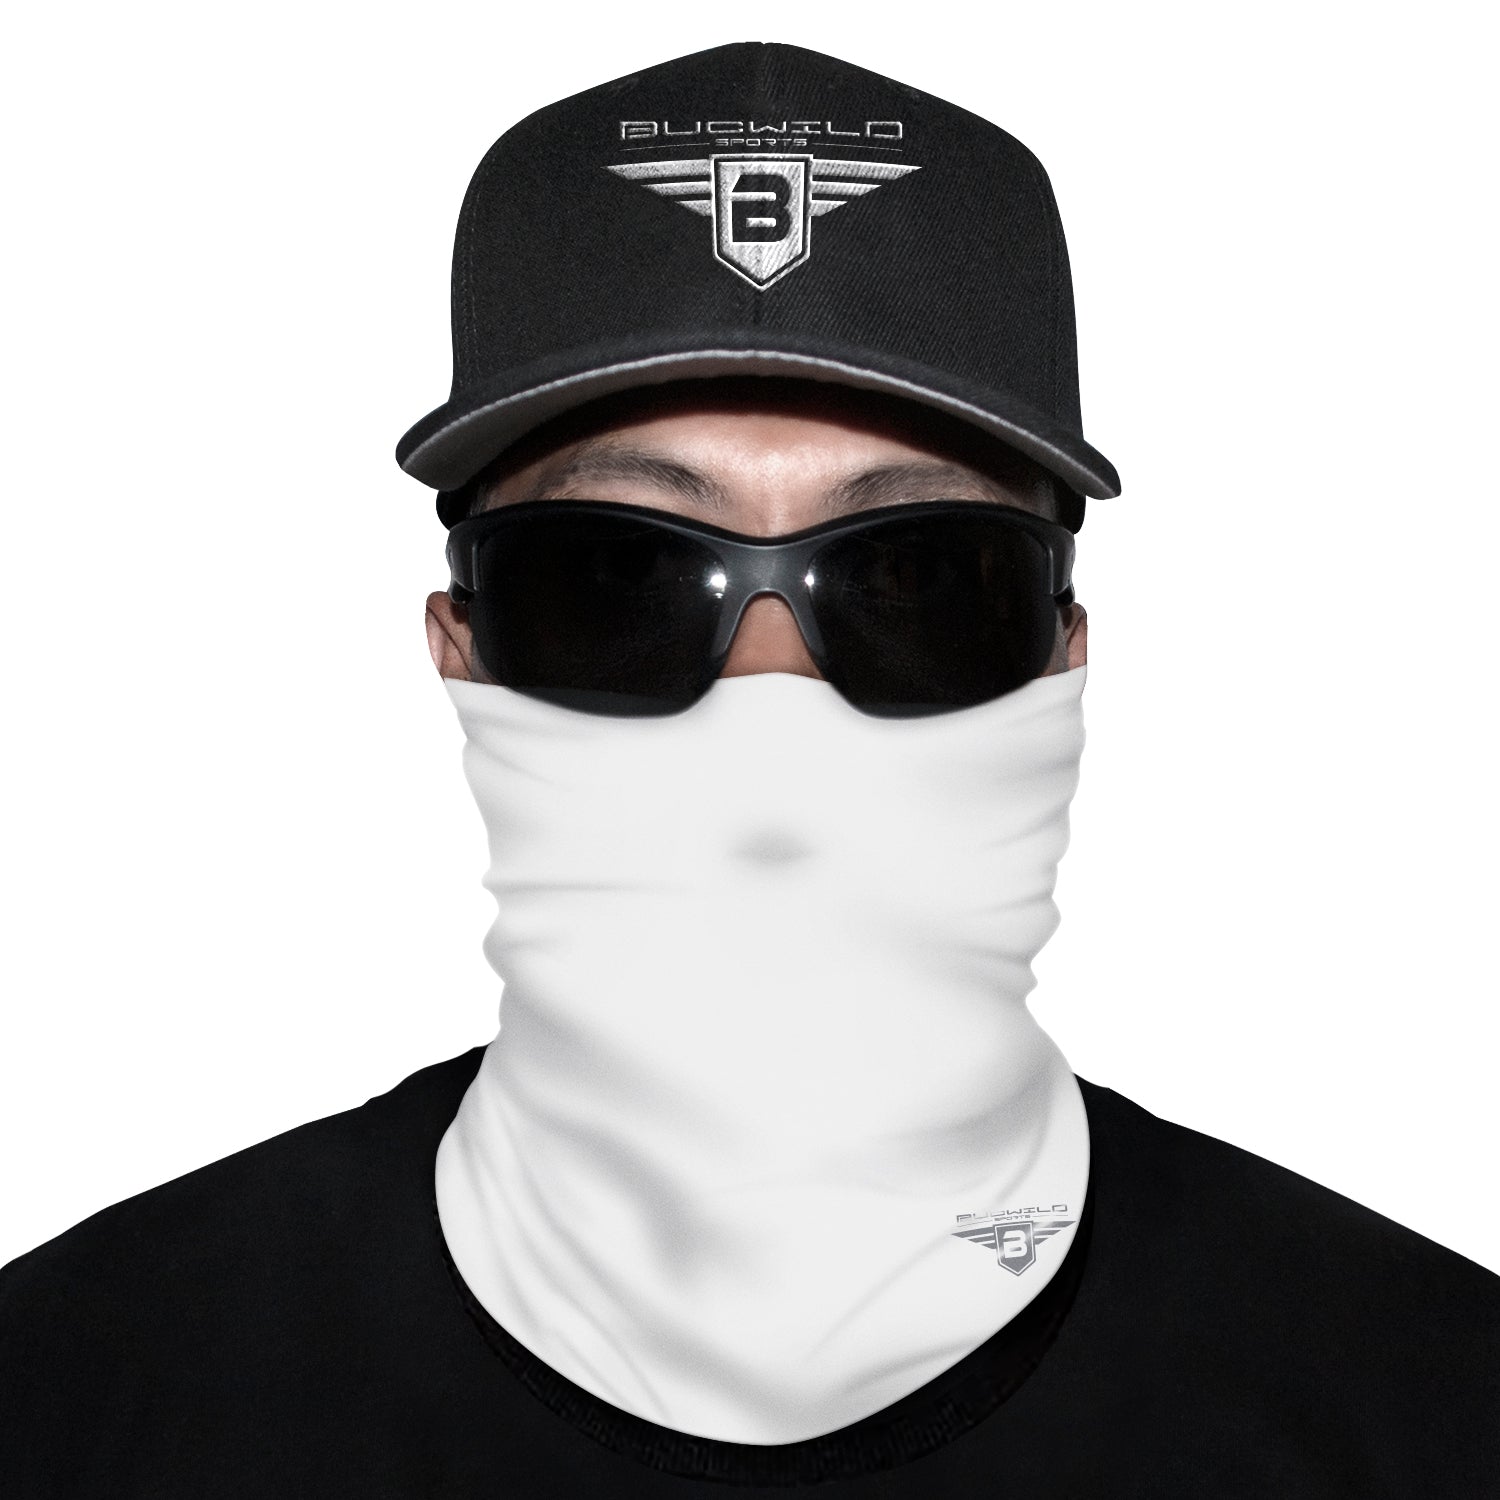 White Neck Gaiter Face Mask